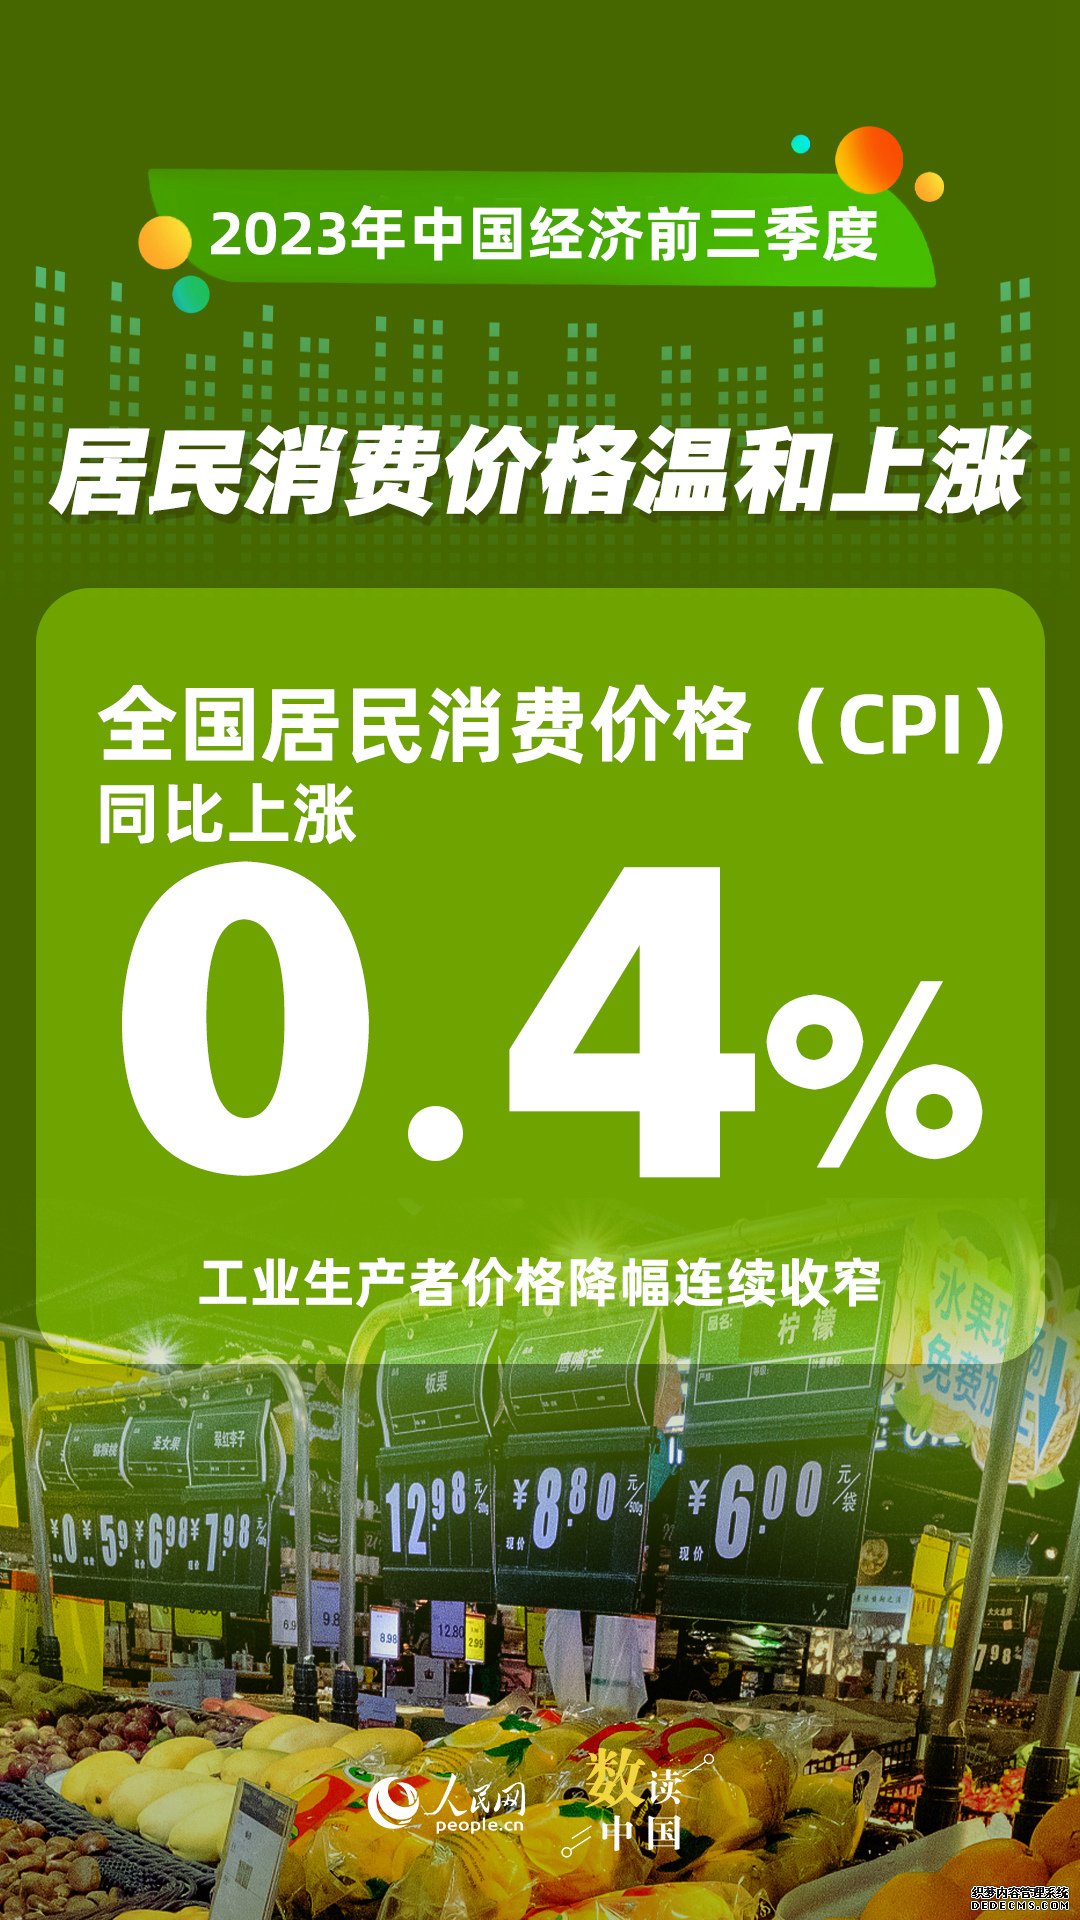 数读中国 | 前三季度国民经济持续恢复向好 积极因素累积增多